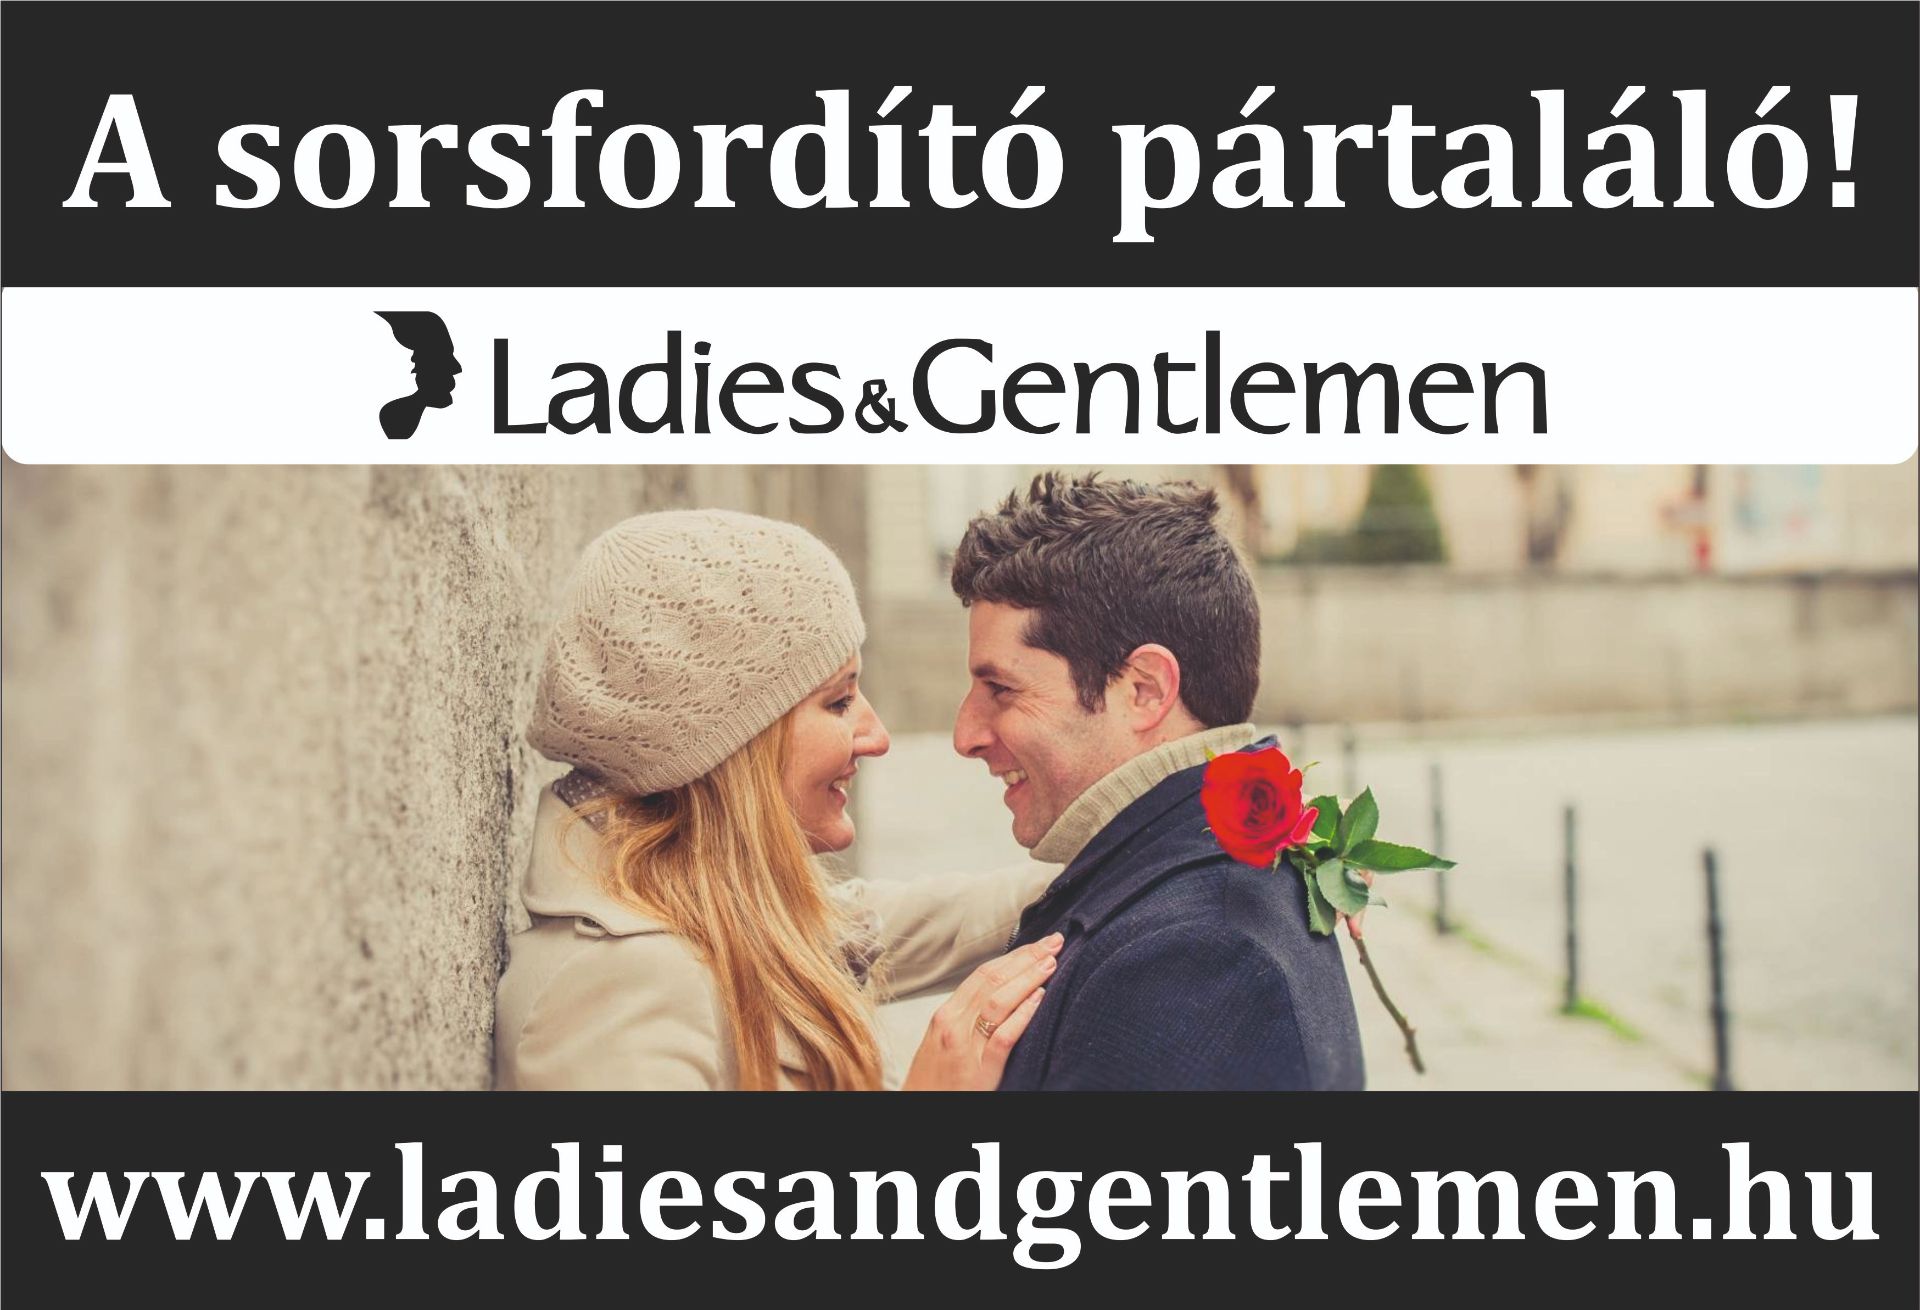 Ladiesandgentlemen